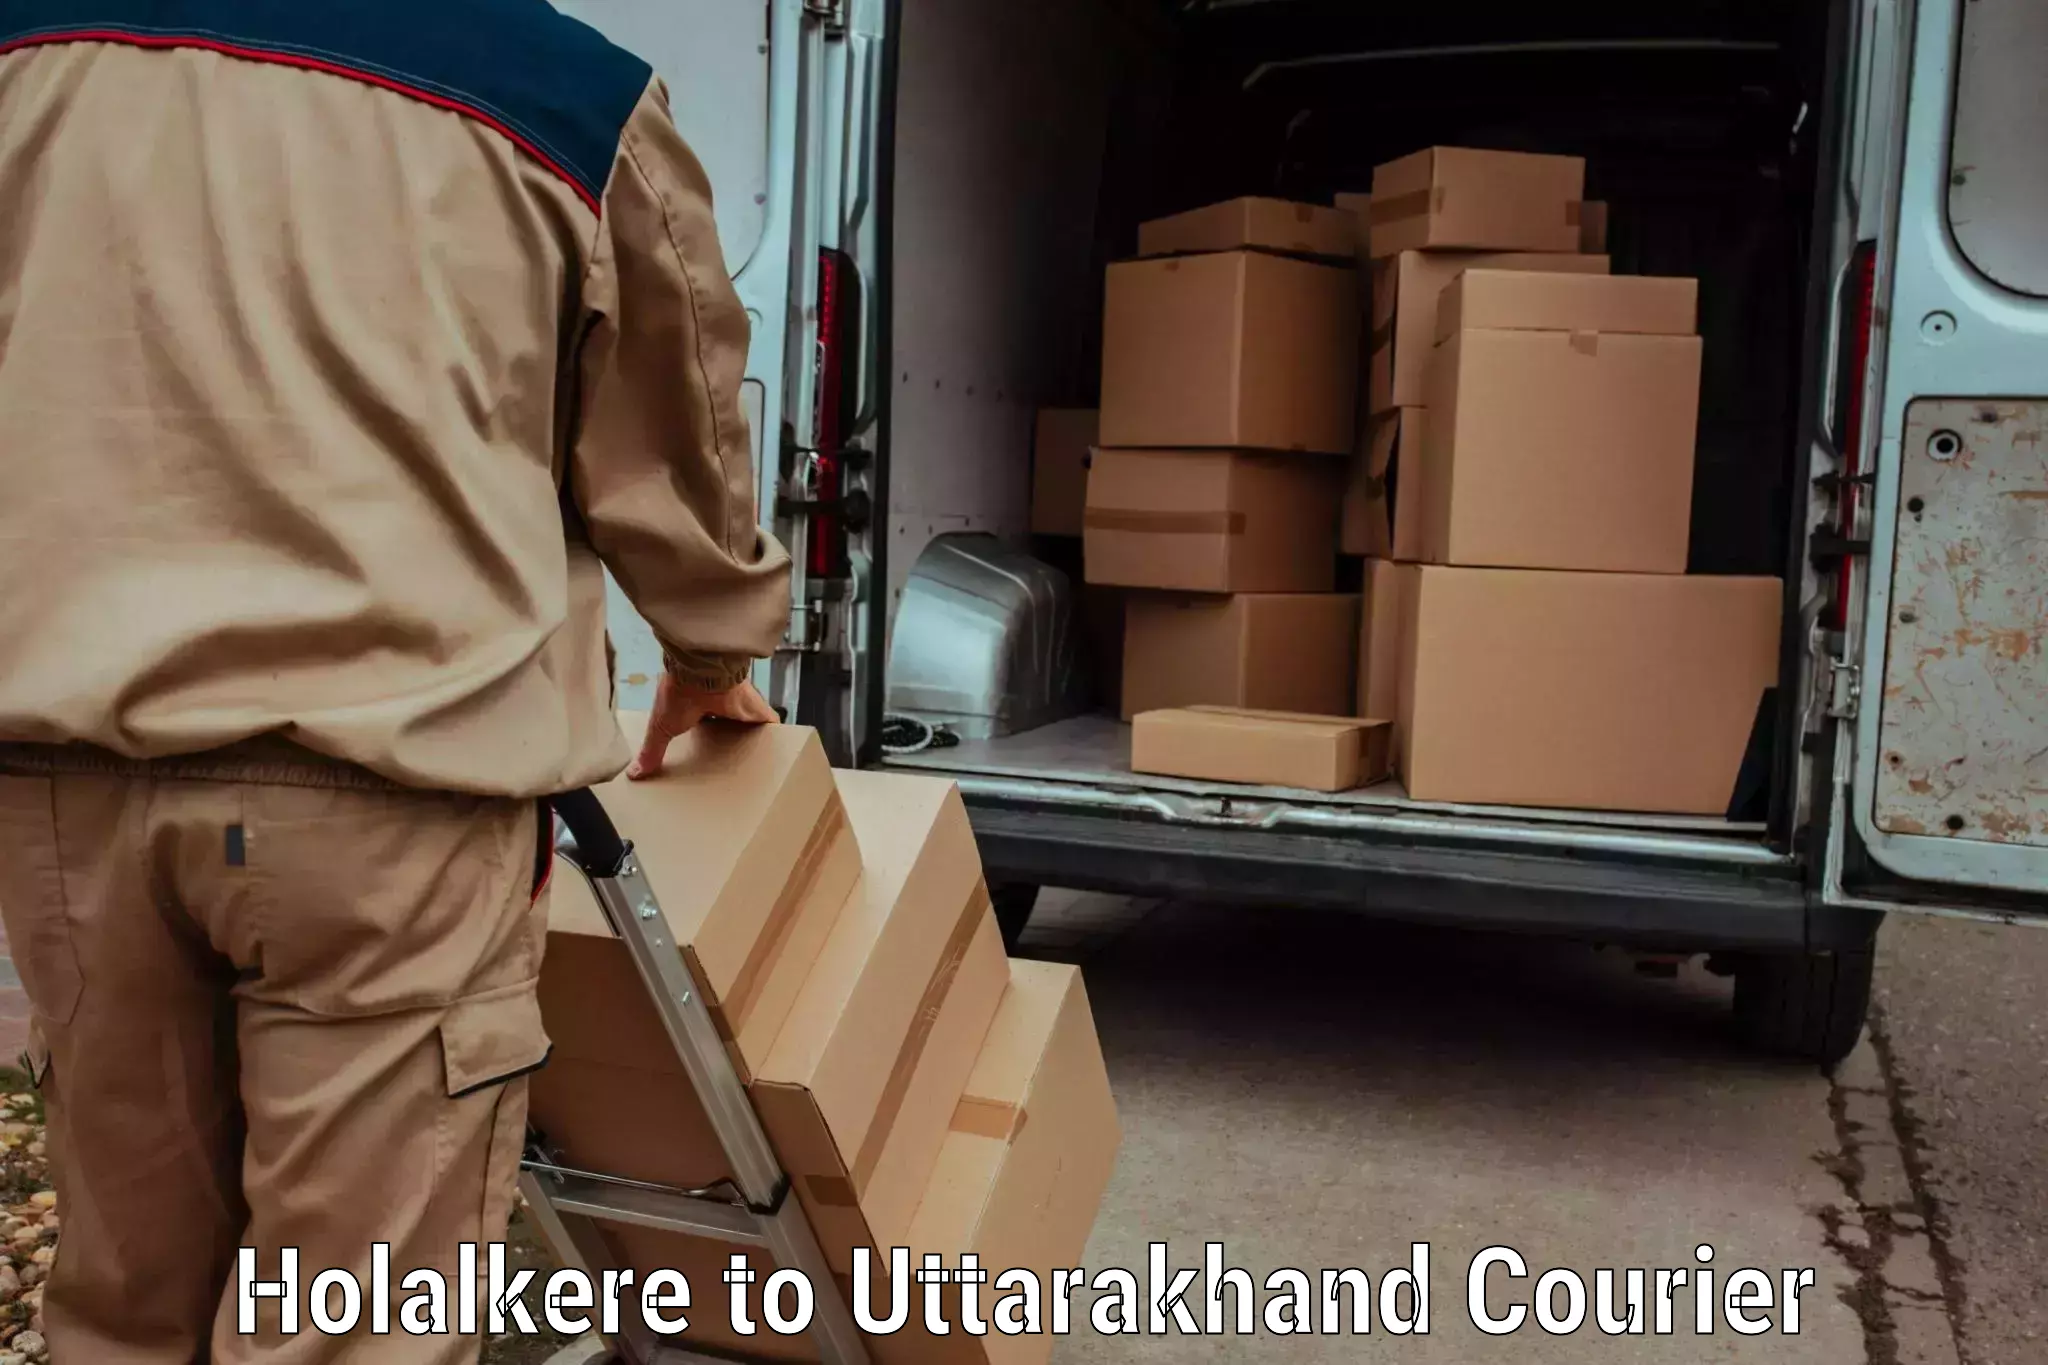 Regular parcel service Holalkere to Doiwala